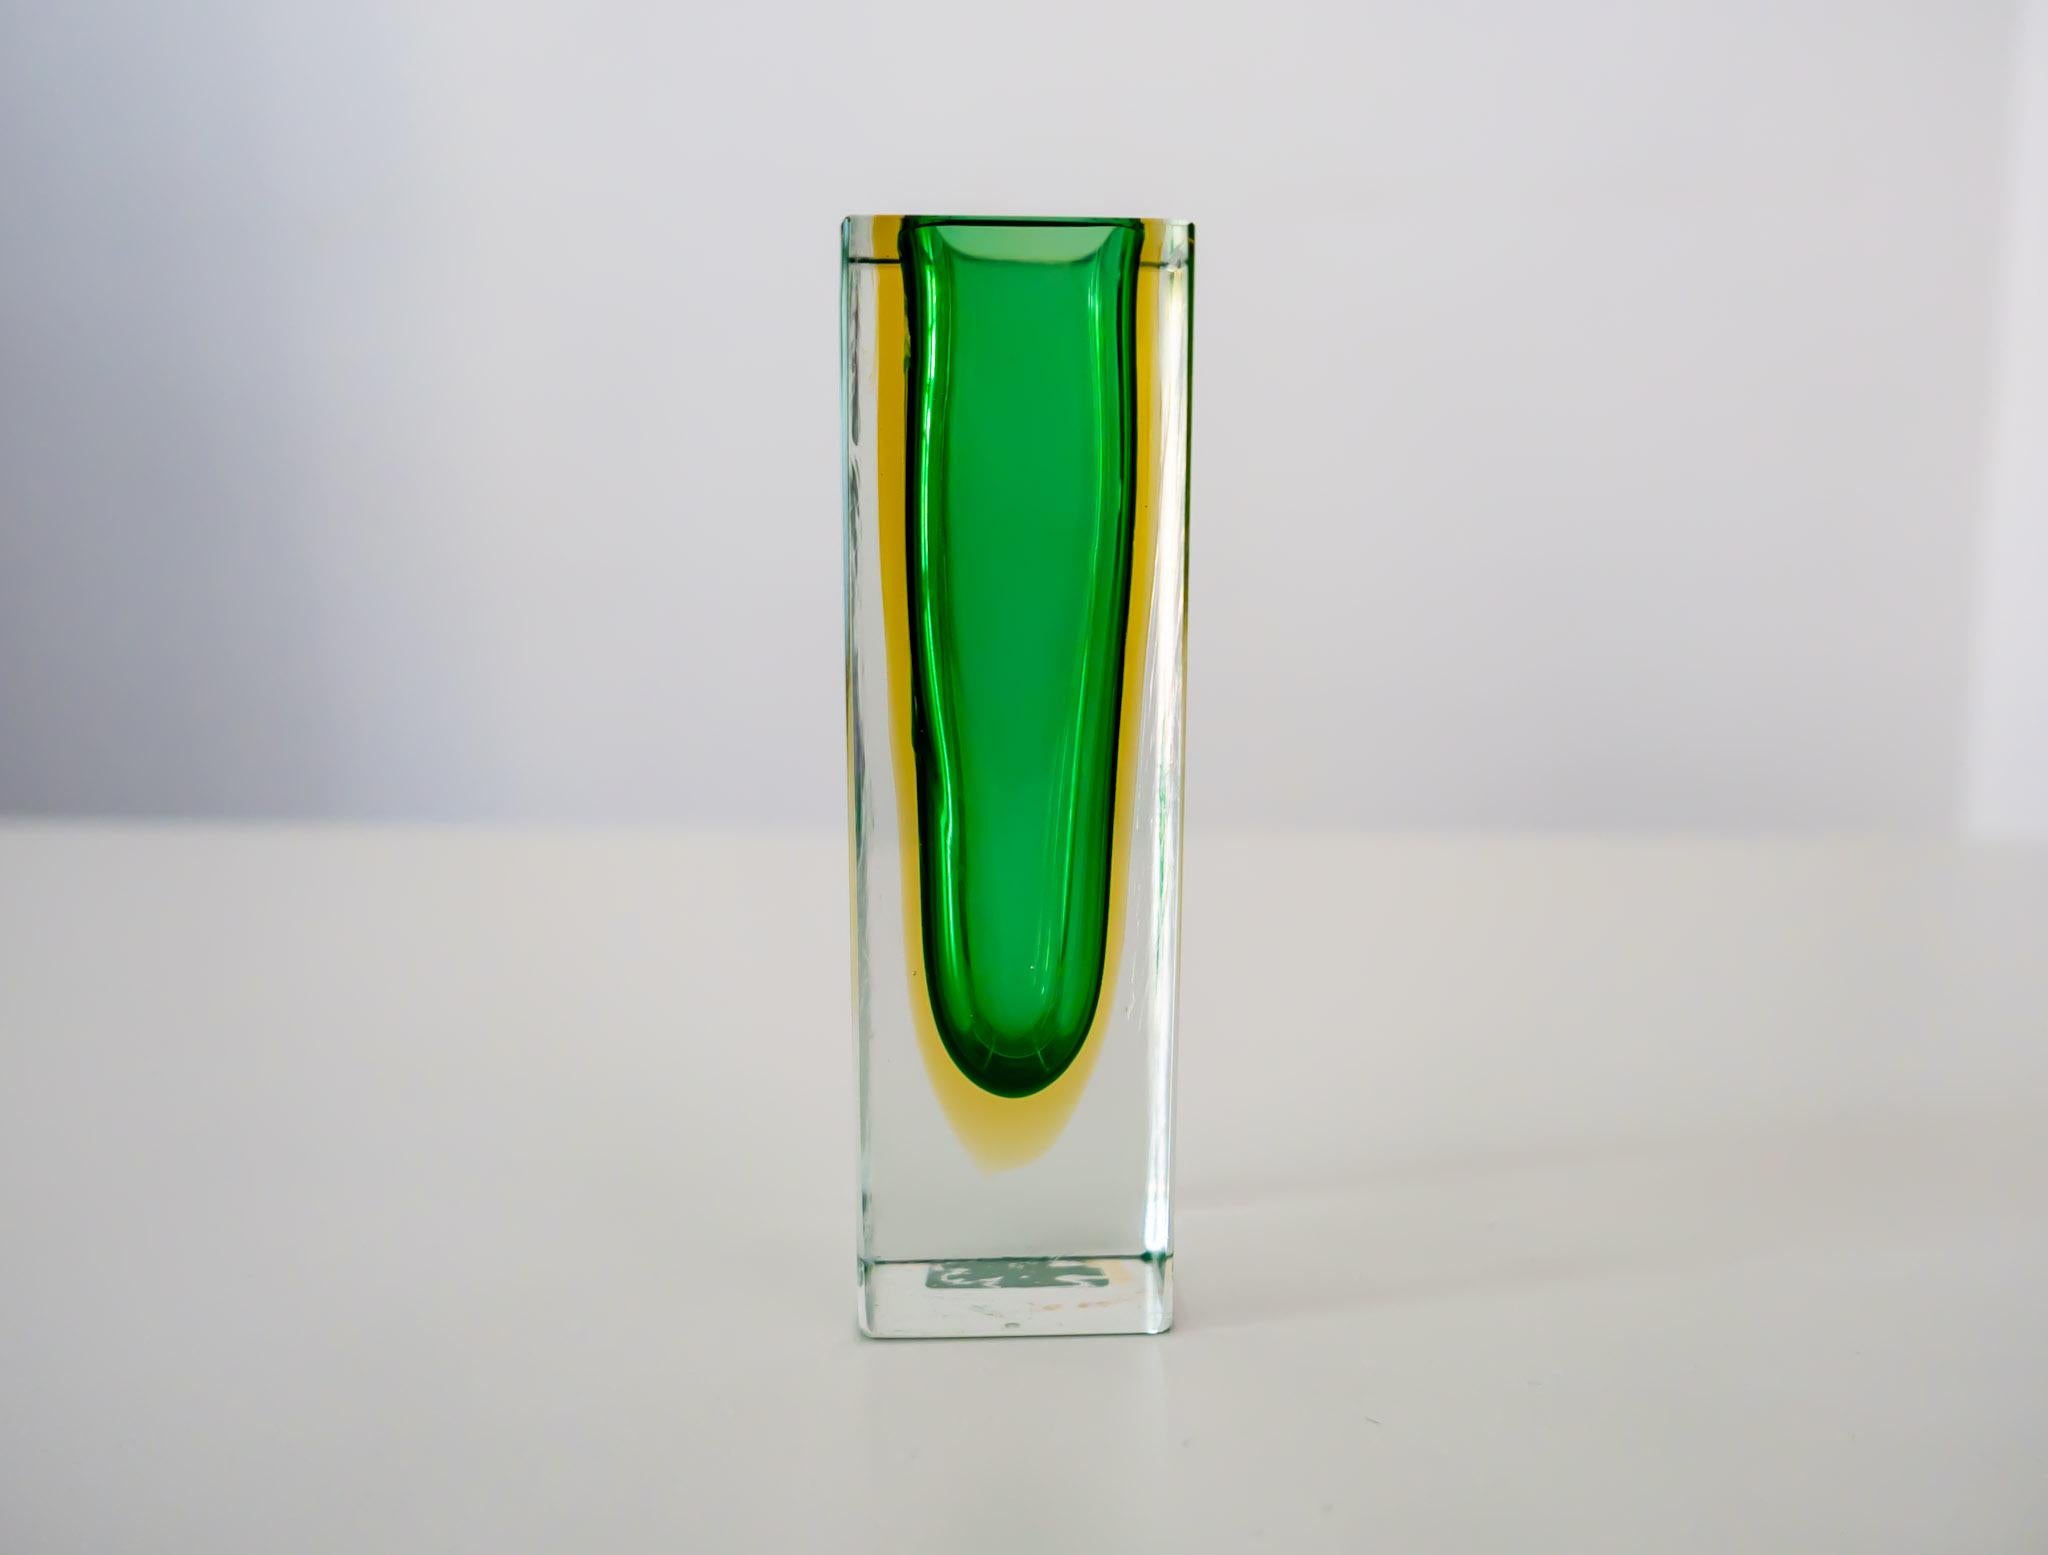 Vase aus grünem und gelbem Murano-Sommerso-Glas von Flavio Poli, Italien, 1960er Jahre.

Diese atemberaubende grüne Murano-Glasvase mit einem Hauch von Gelb des italienischen Designers Flavio Poli ist der absolute Blickfang für jedes moderne